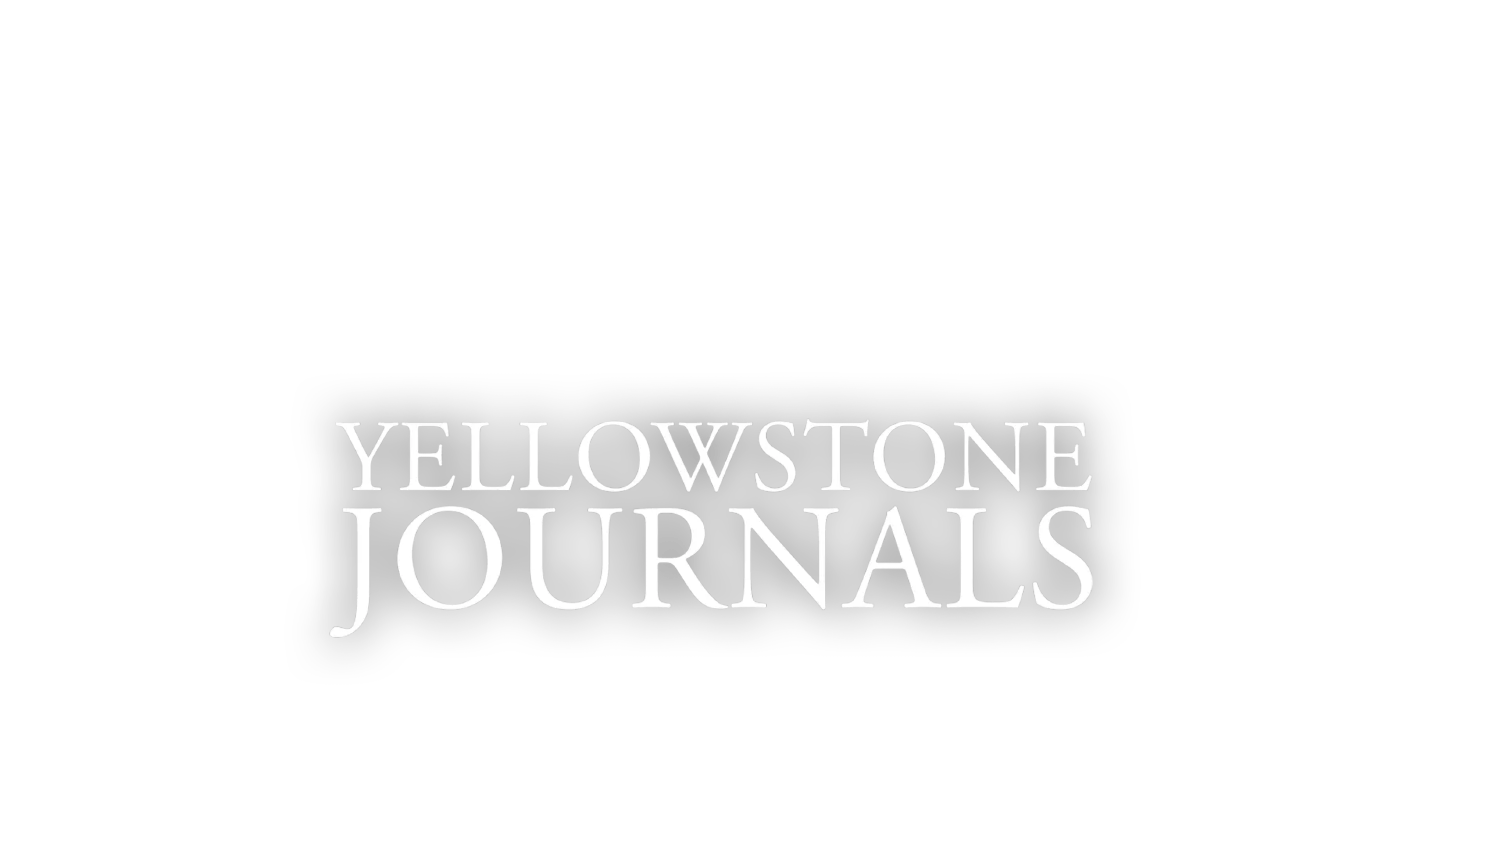 Yellowstone Journals